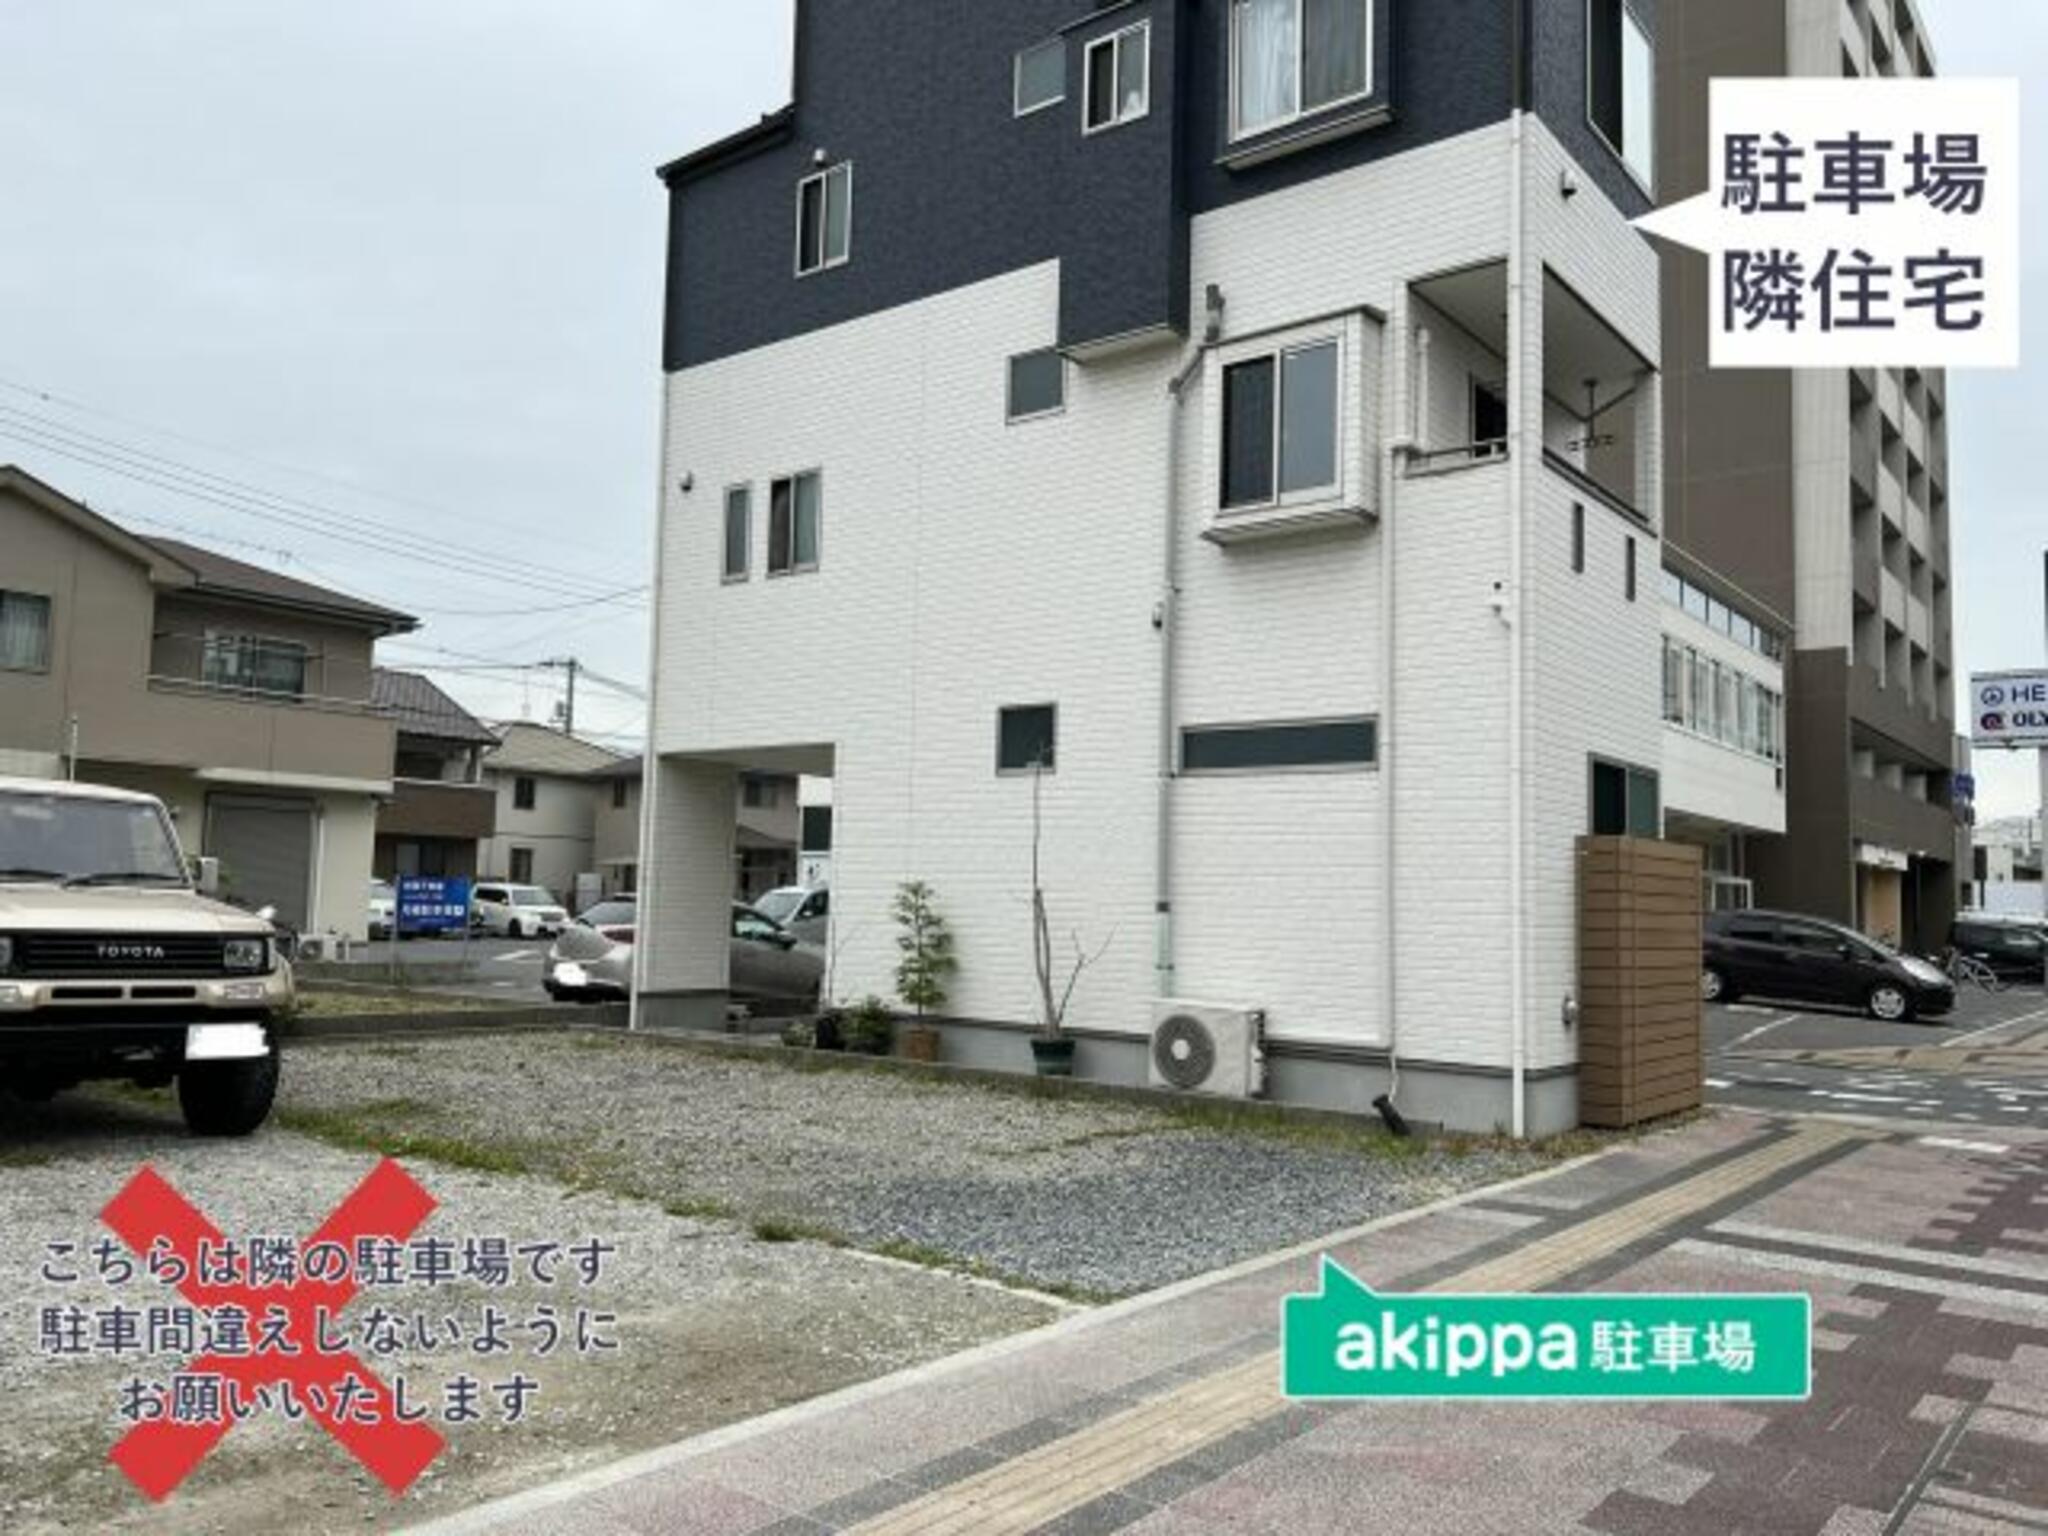 akippa駐車場:広島県広島市南区段原日出2丁目14-3の代表写真1